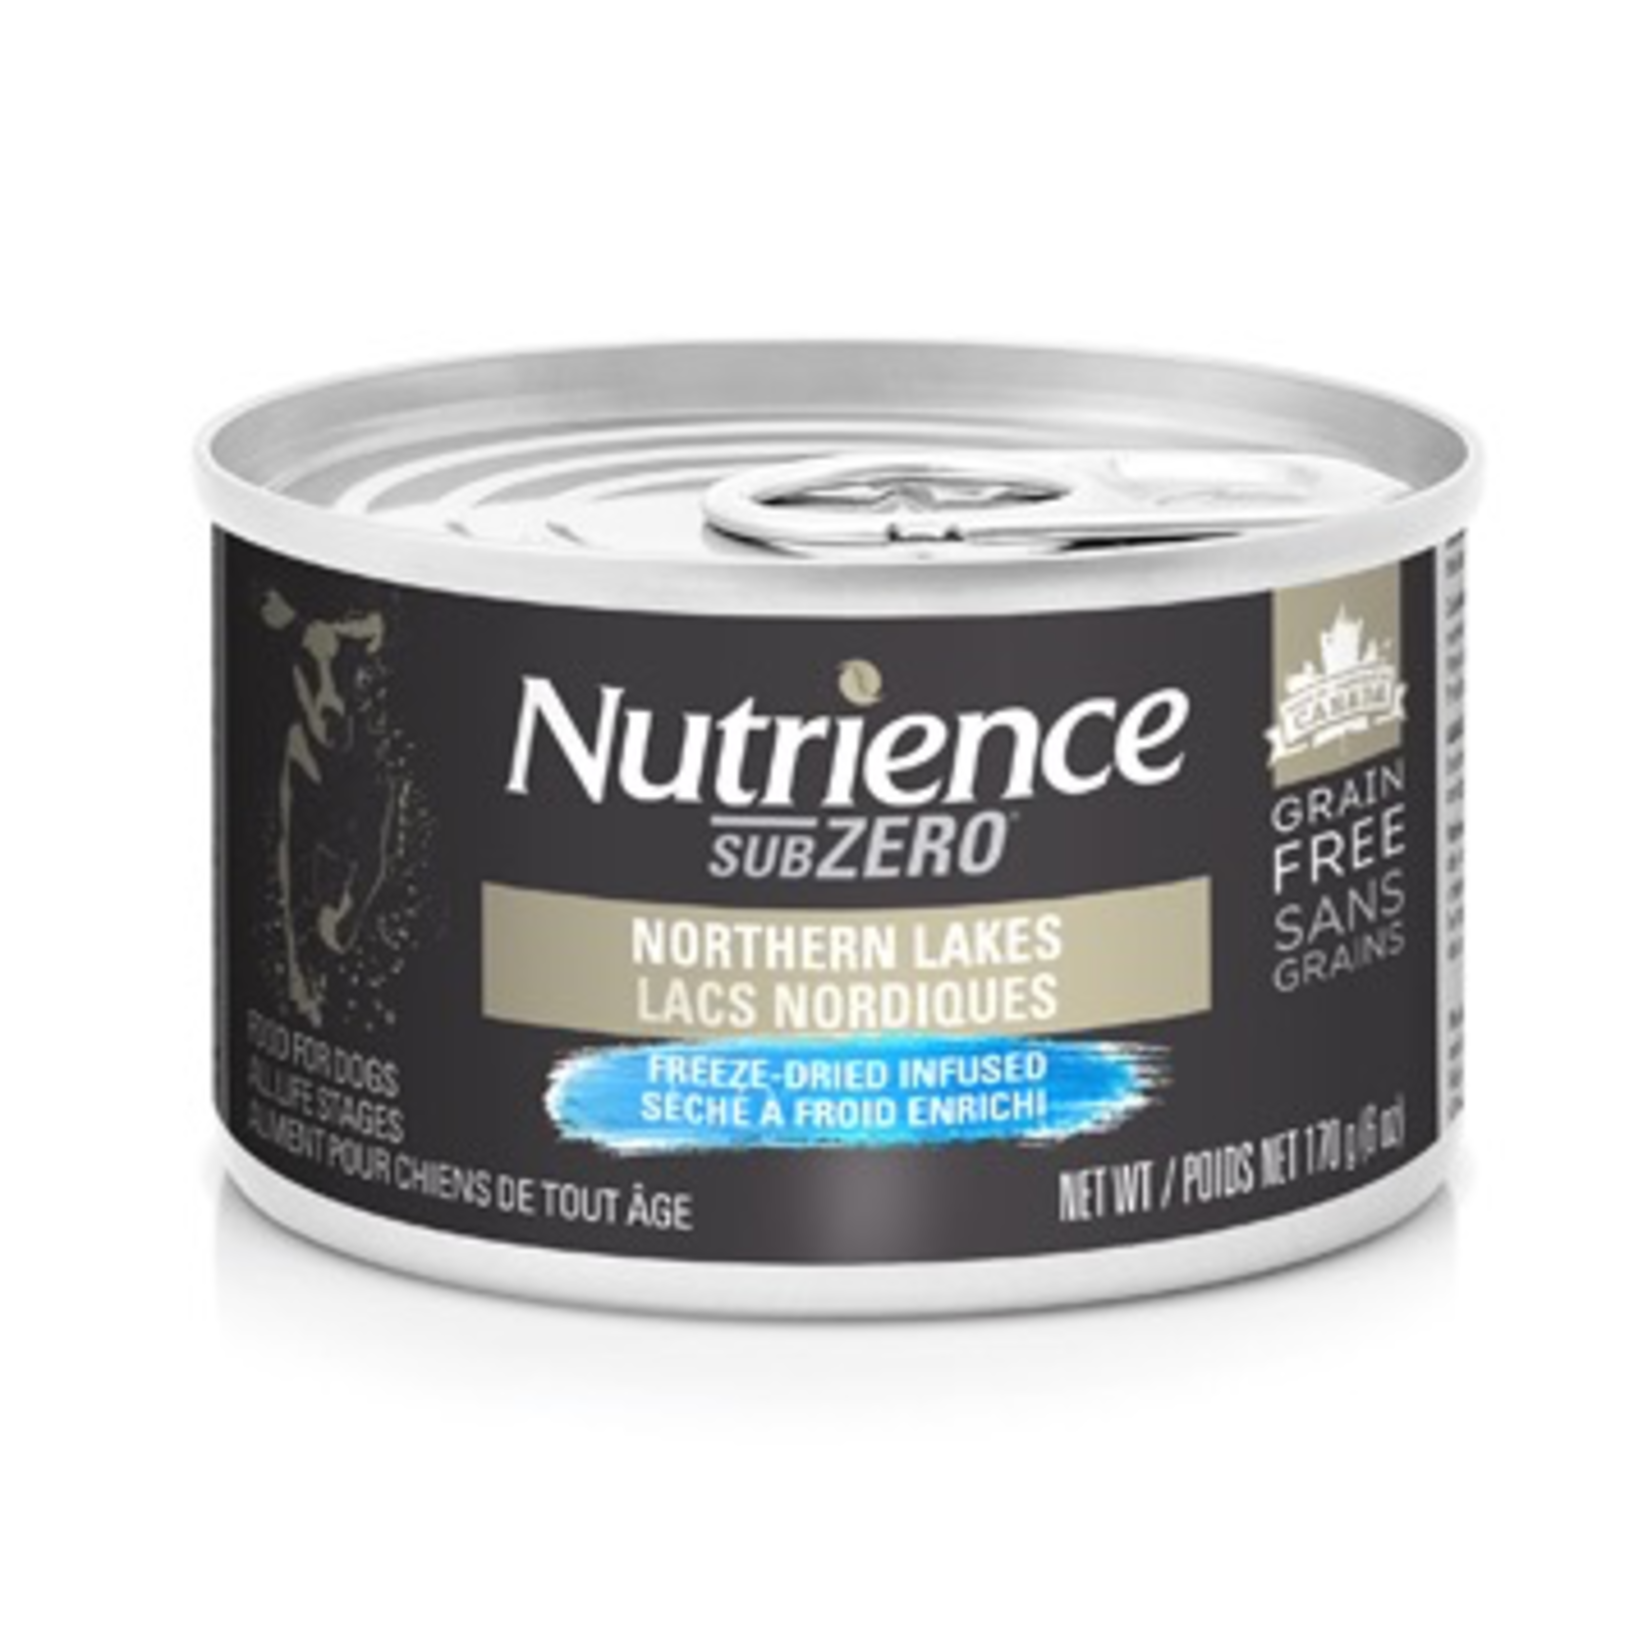 NUTRIENCE Nutrience Subzero - Northern Lakes Pate - 170g